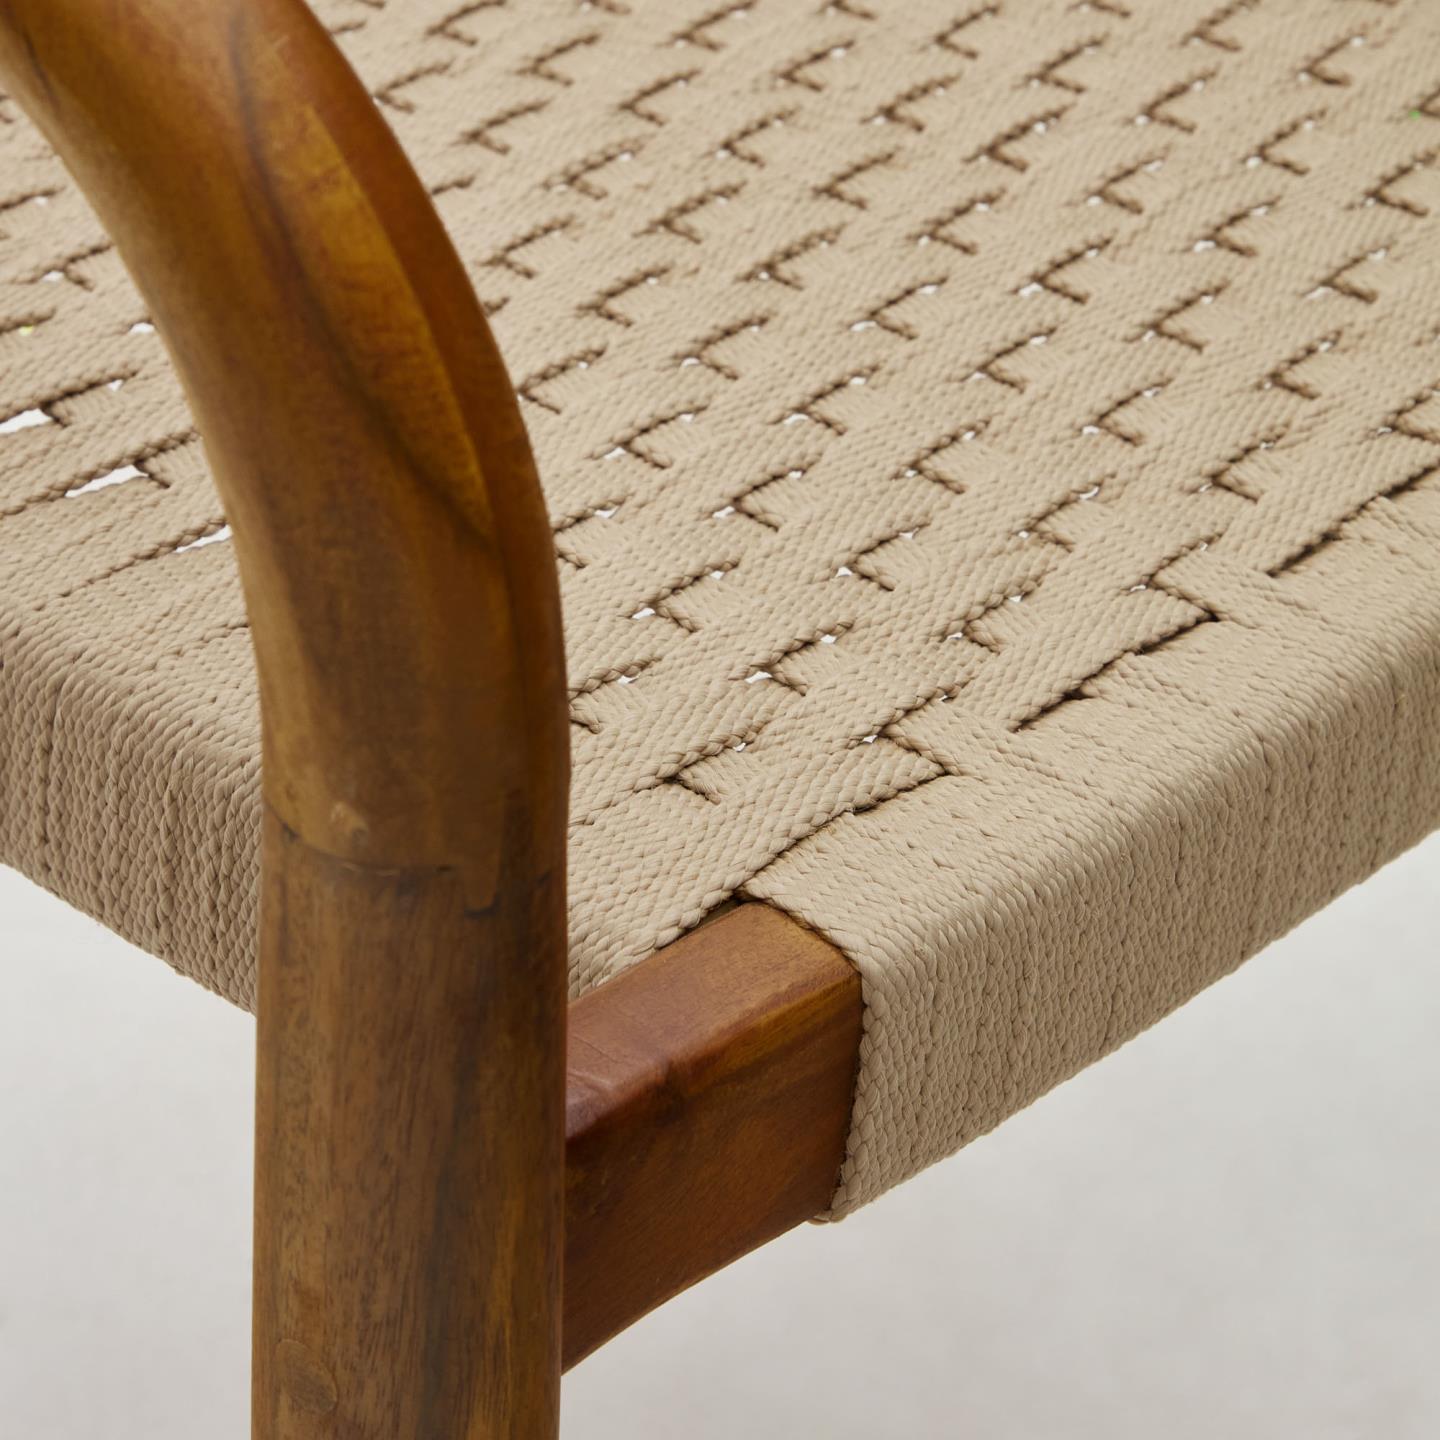 Krzesło NINA ciemnobrązowe drewno akacjowe La Forma    Eye on Design